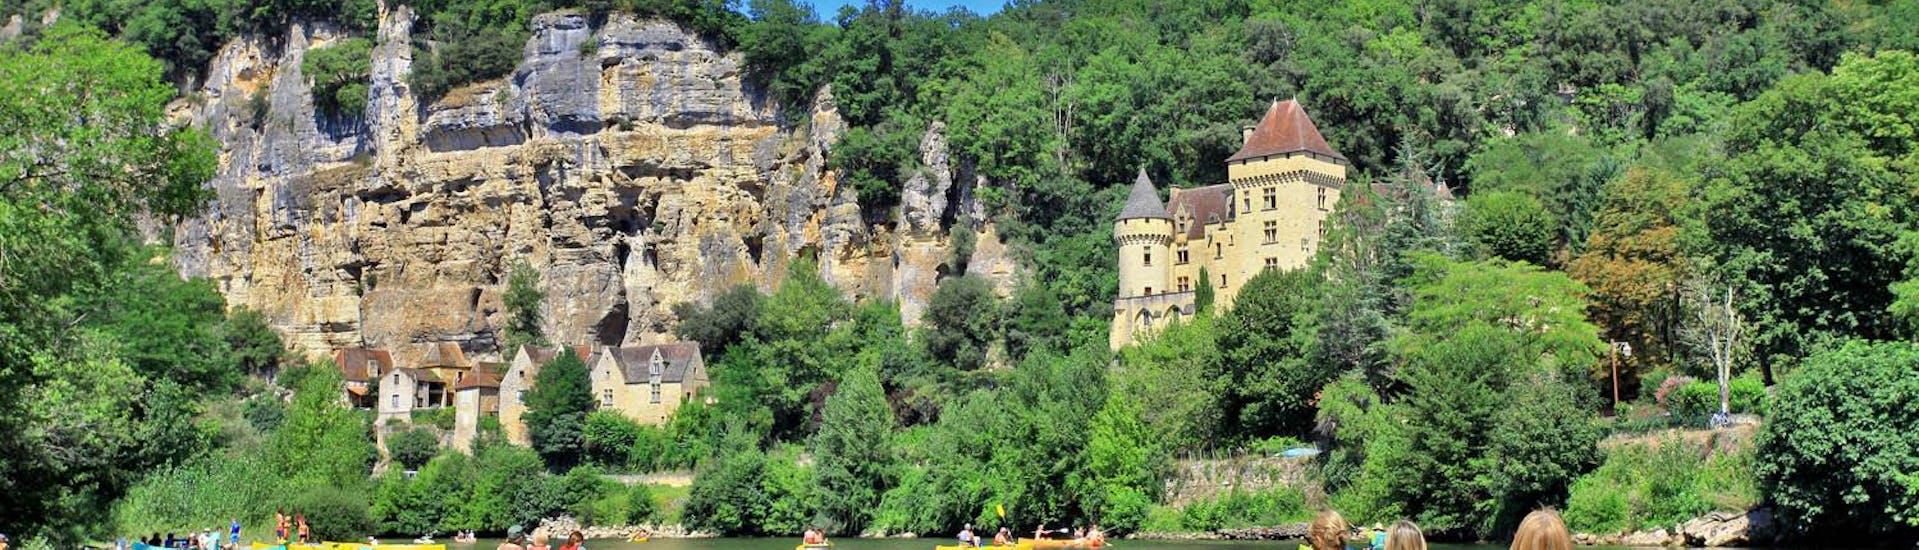 Un gruppo di persone su diverse canoe nel fiume Dordogna sta contemplando le scogliere durante il viaggio di 16 km da Carsac con Canoë Dordogne.